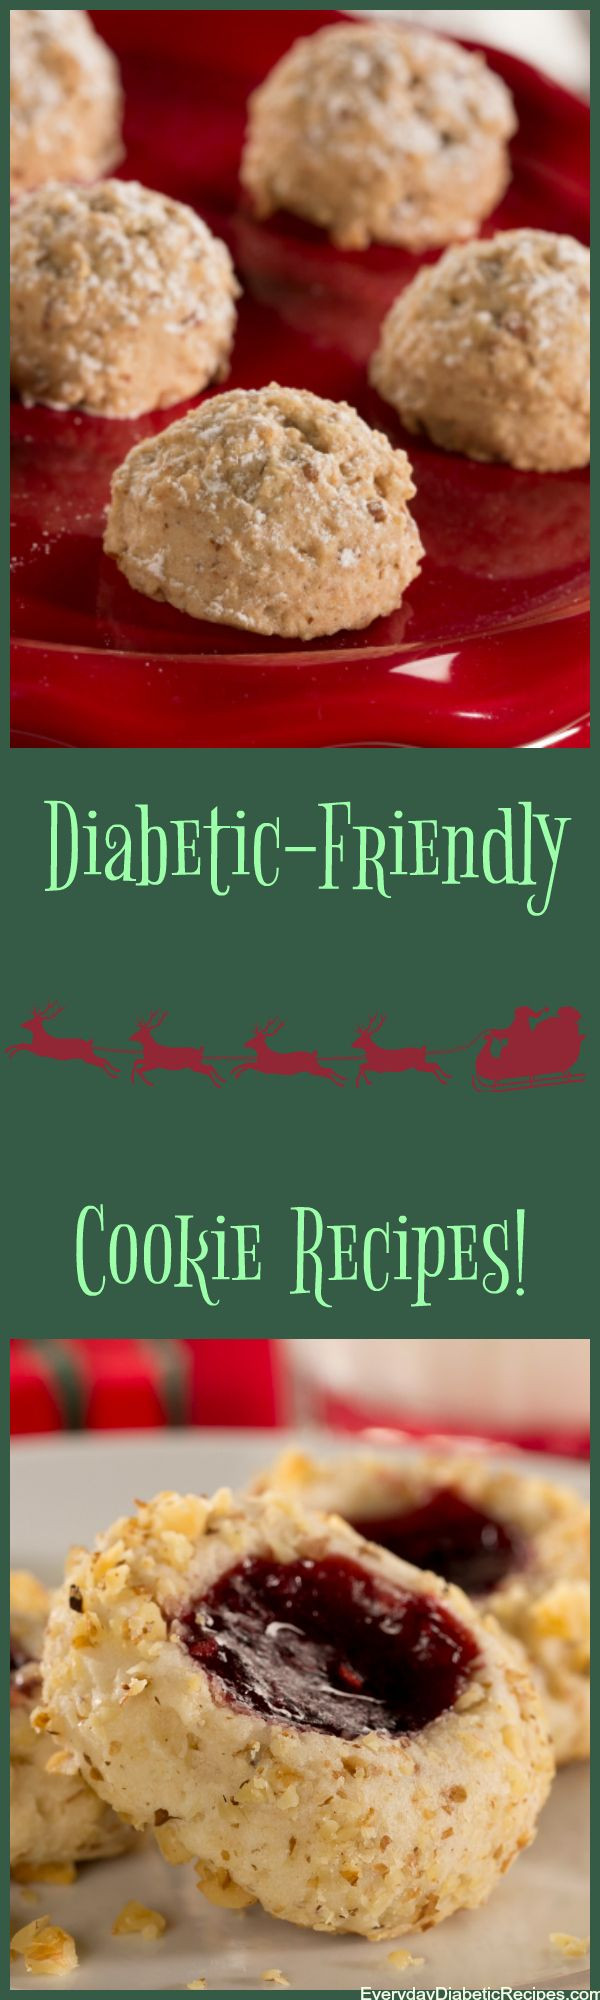 Diabetic Christmas Cookies
 Best 25 Diabetic cookie recipes ideas on Pinterest